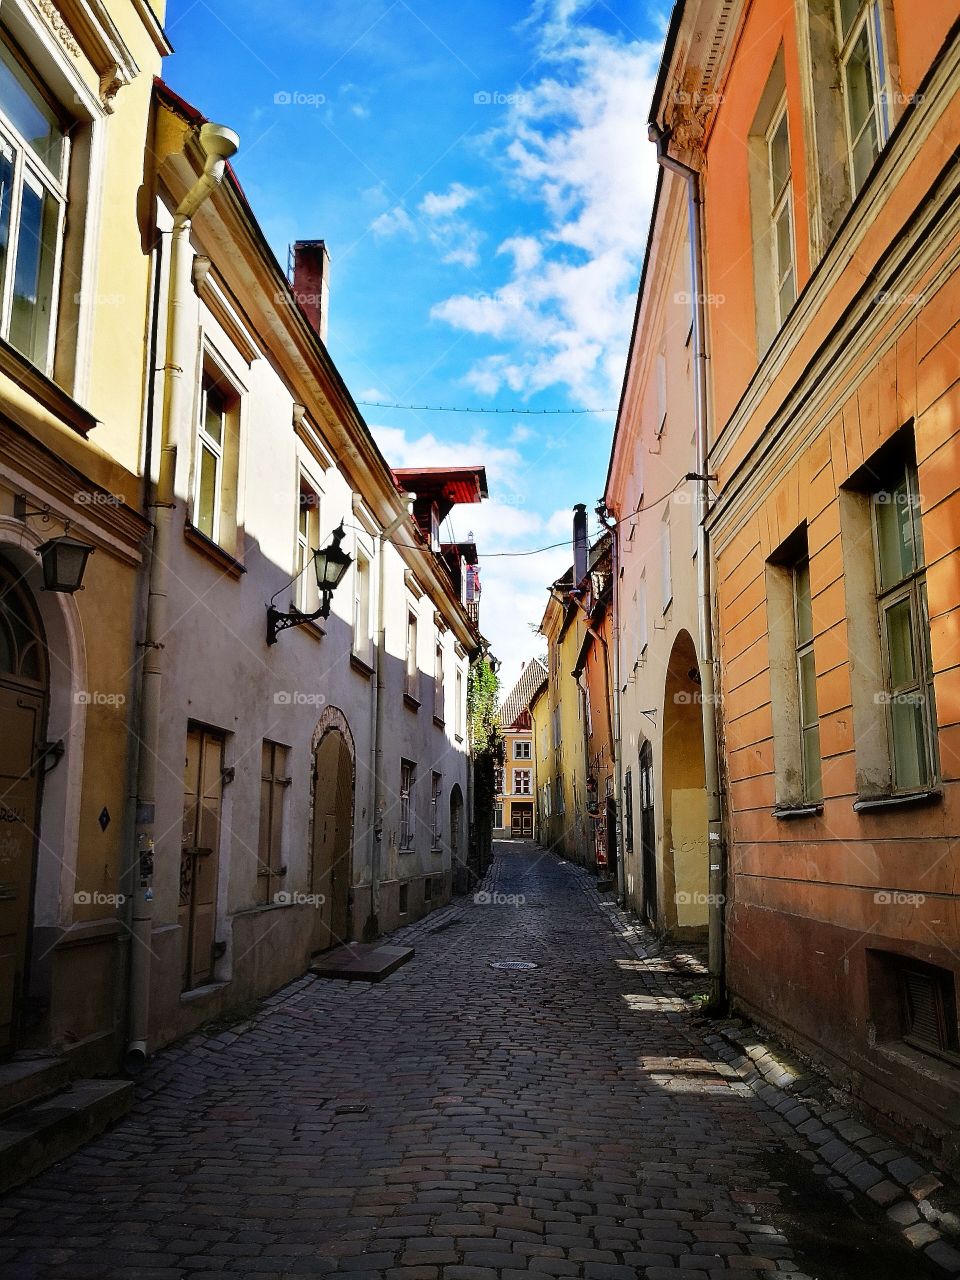 Old Tallinn.